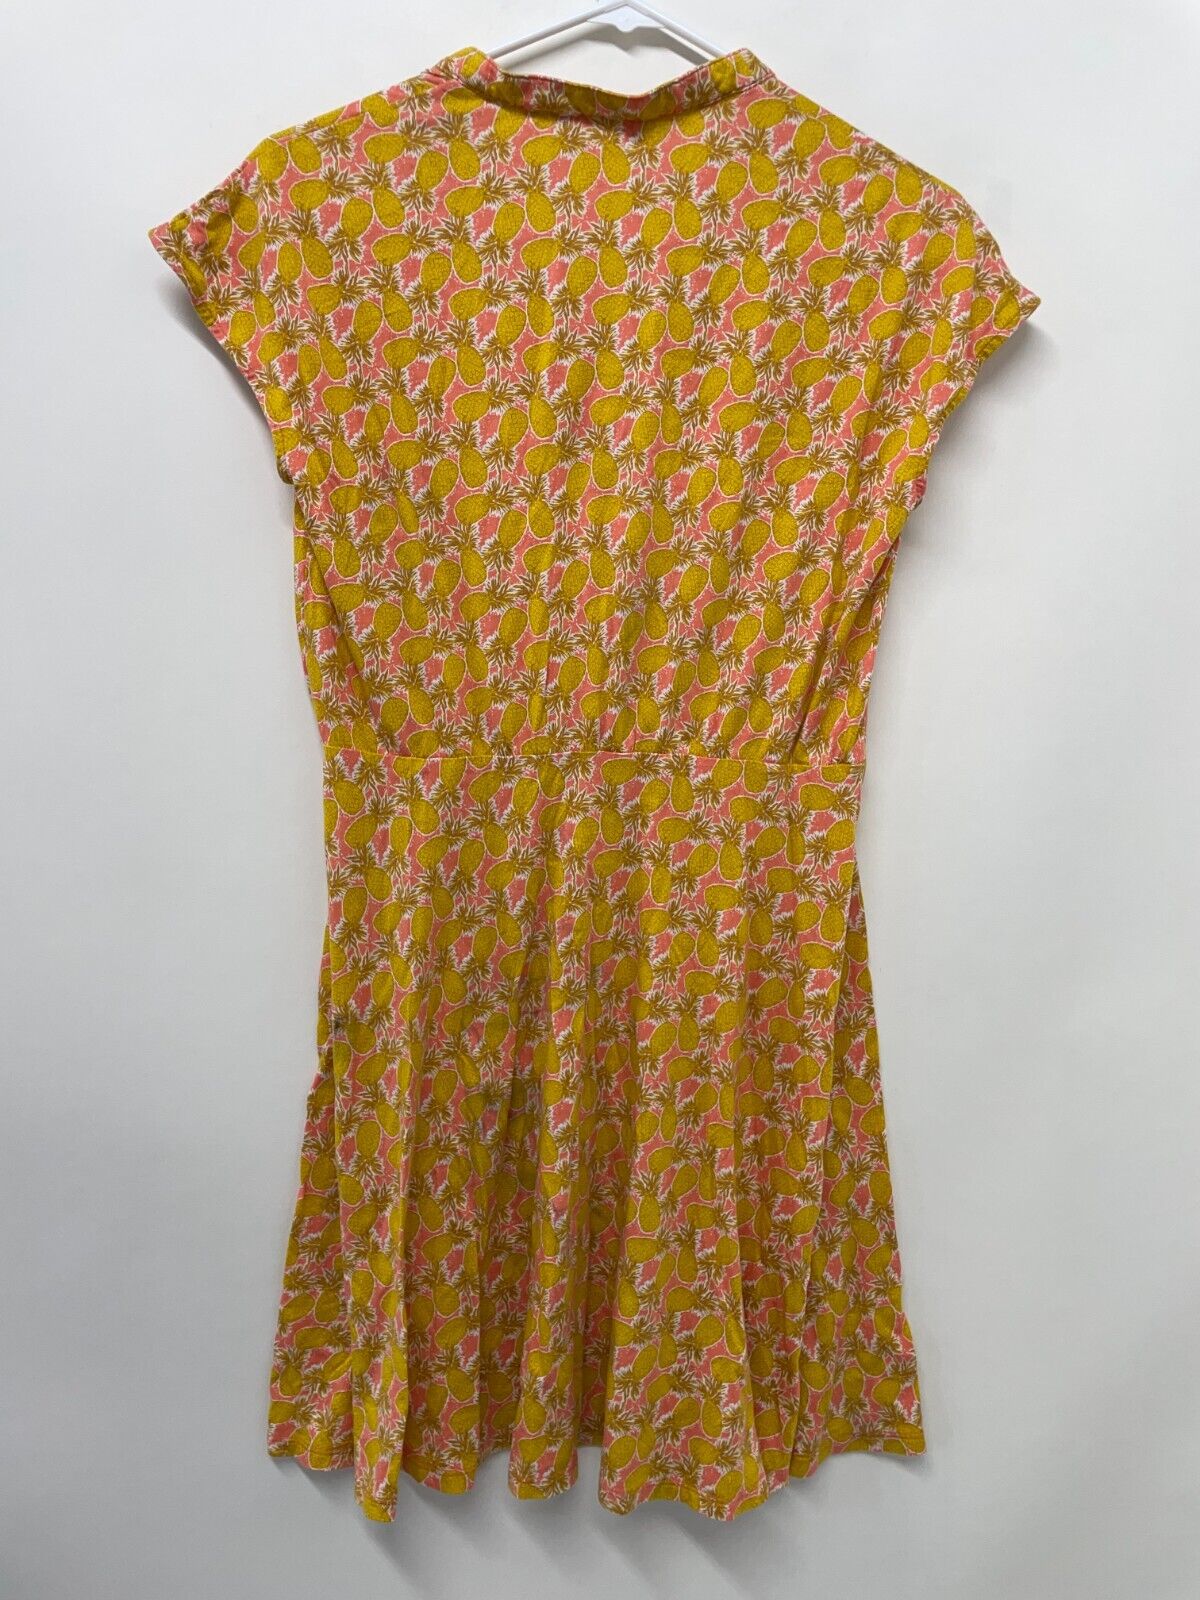 Boden Womens 6 Flippy Jersey Dress Yellow Pineapple Print Button Front D0259